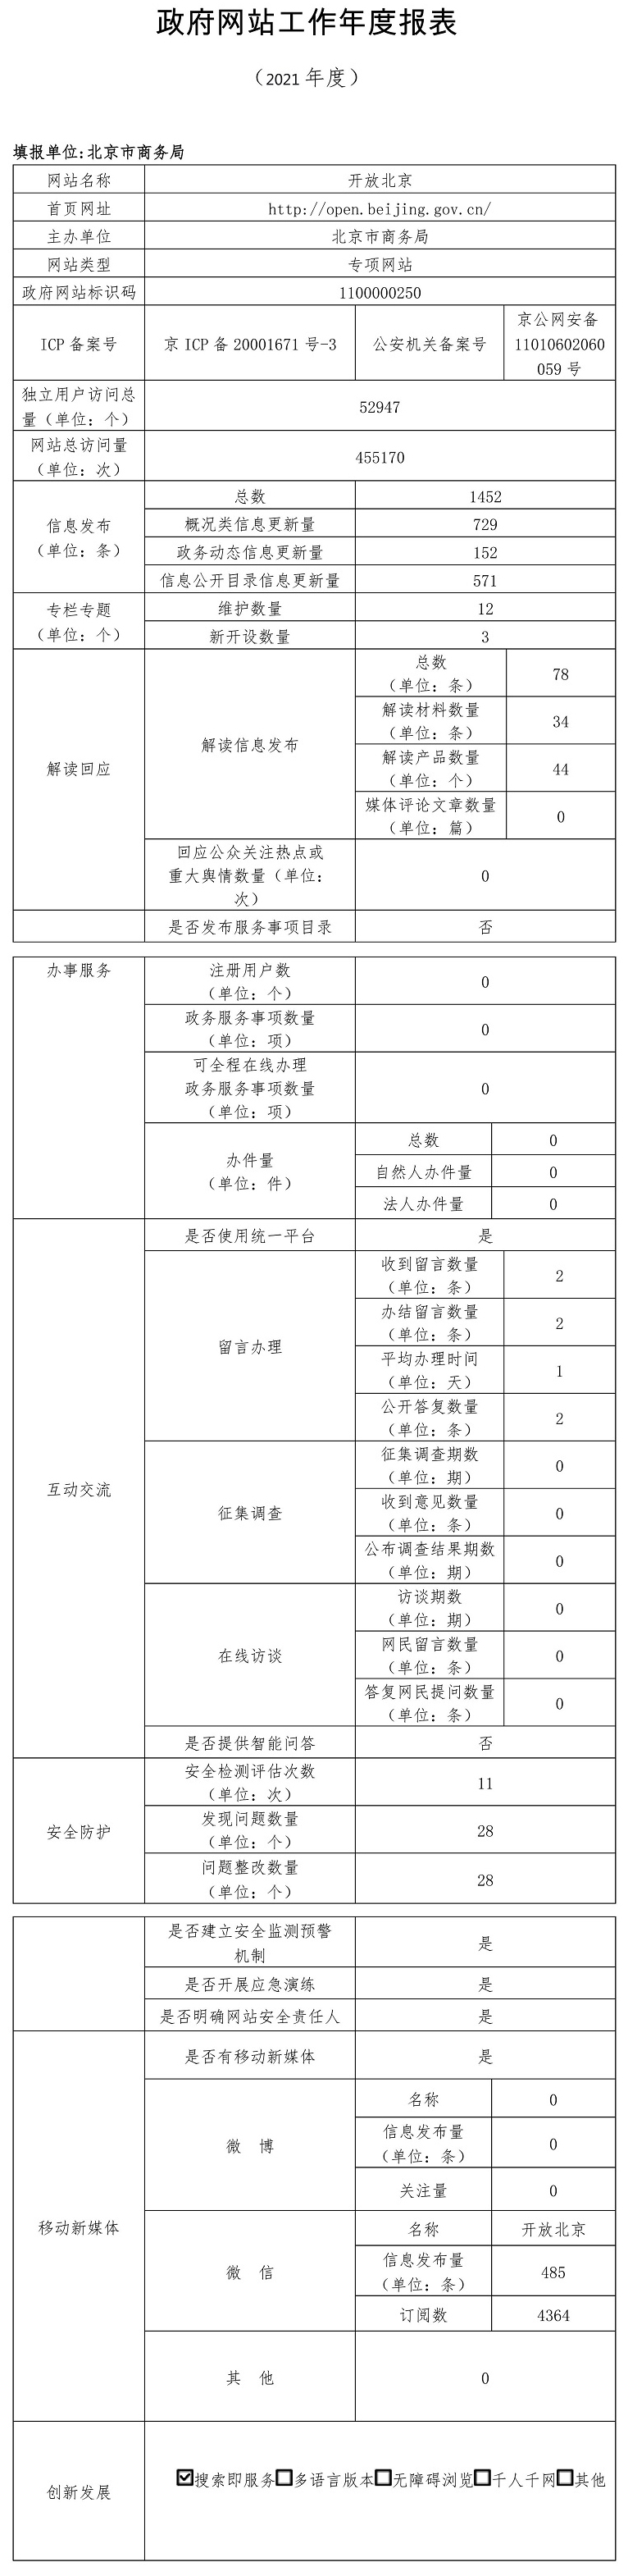 開放北京2021年政府網站年度工作報表